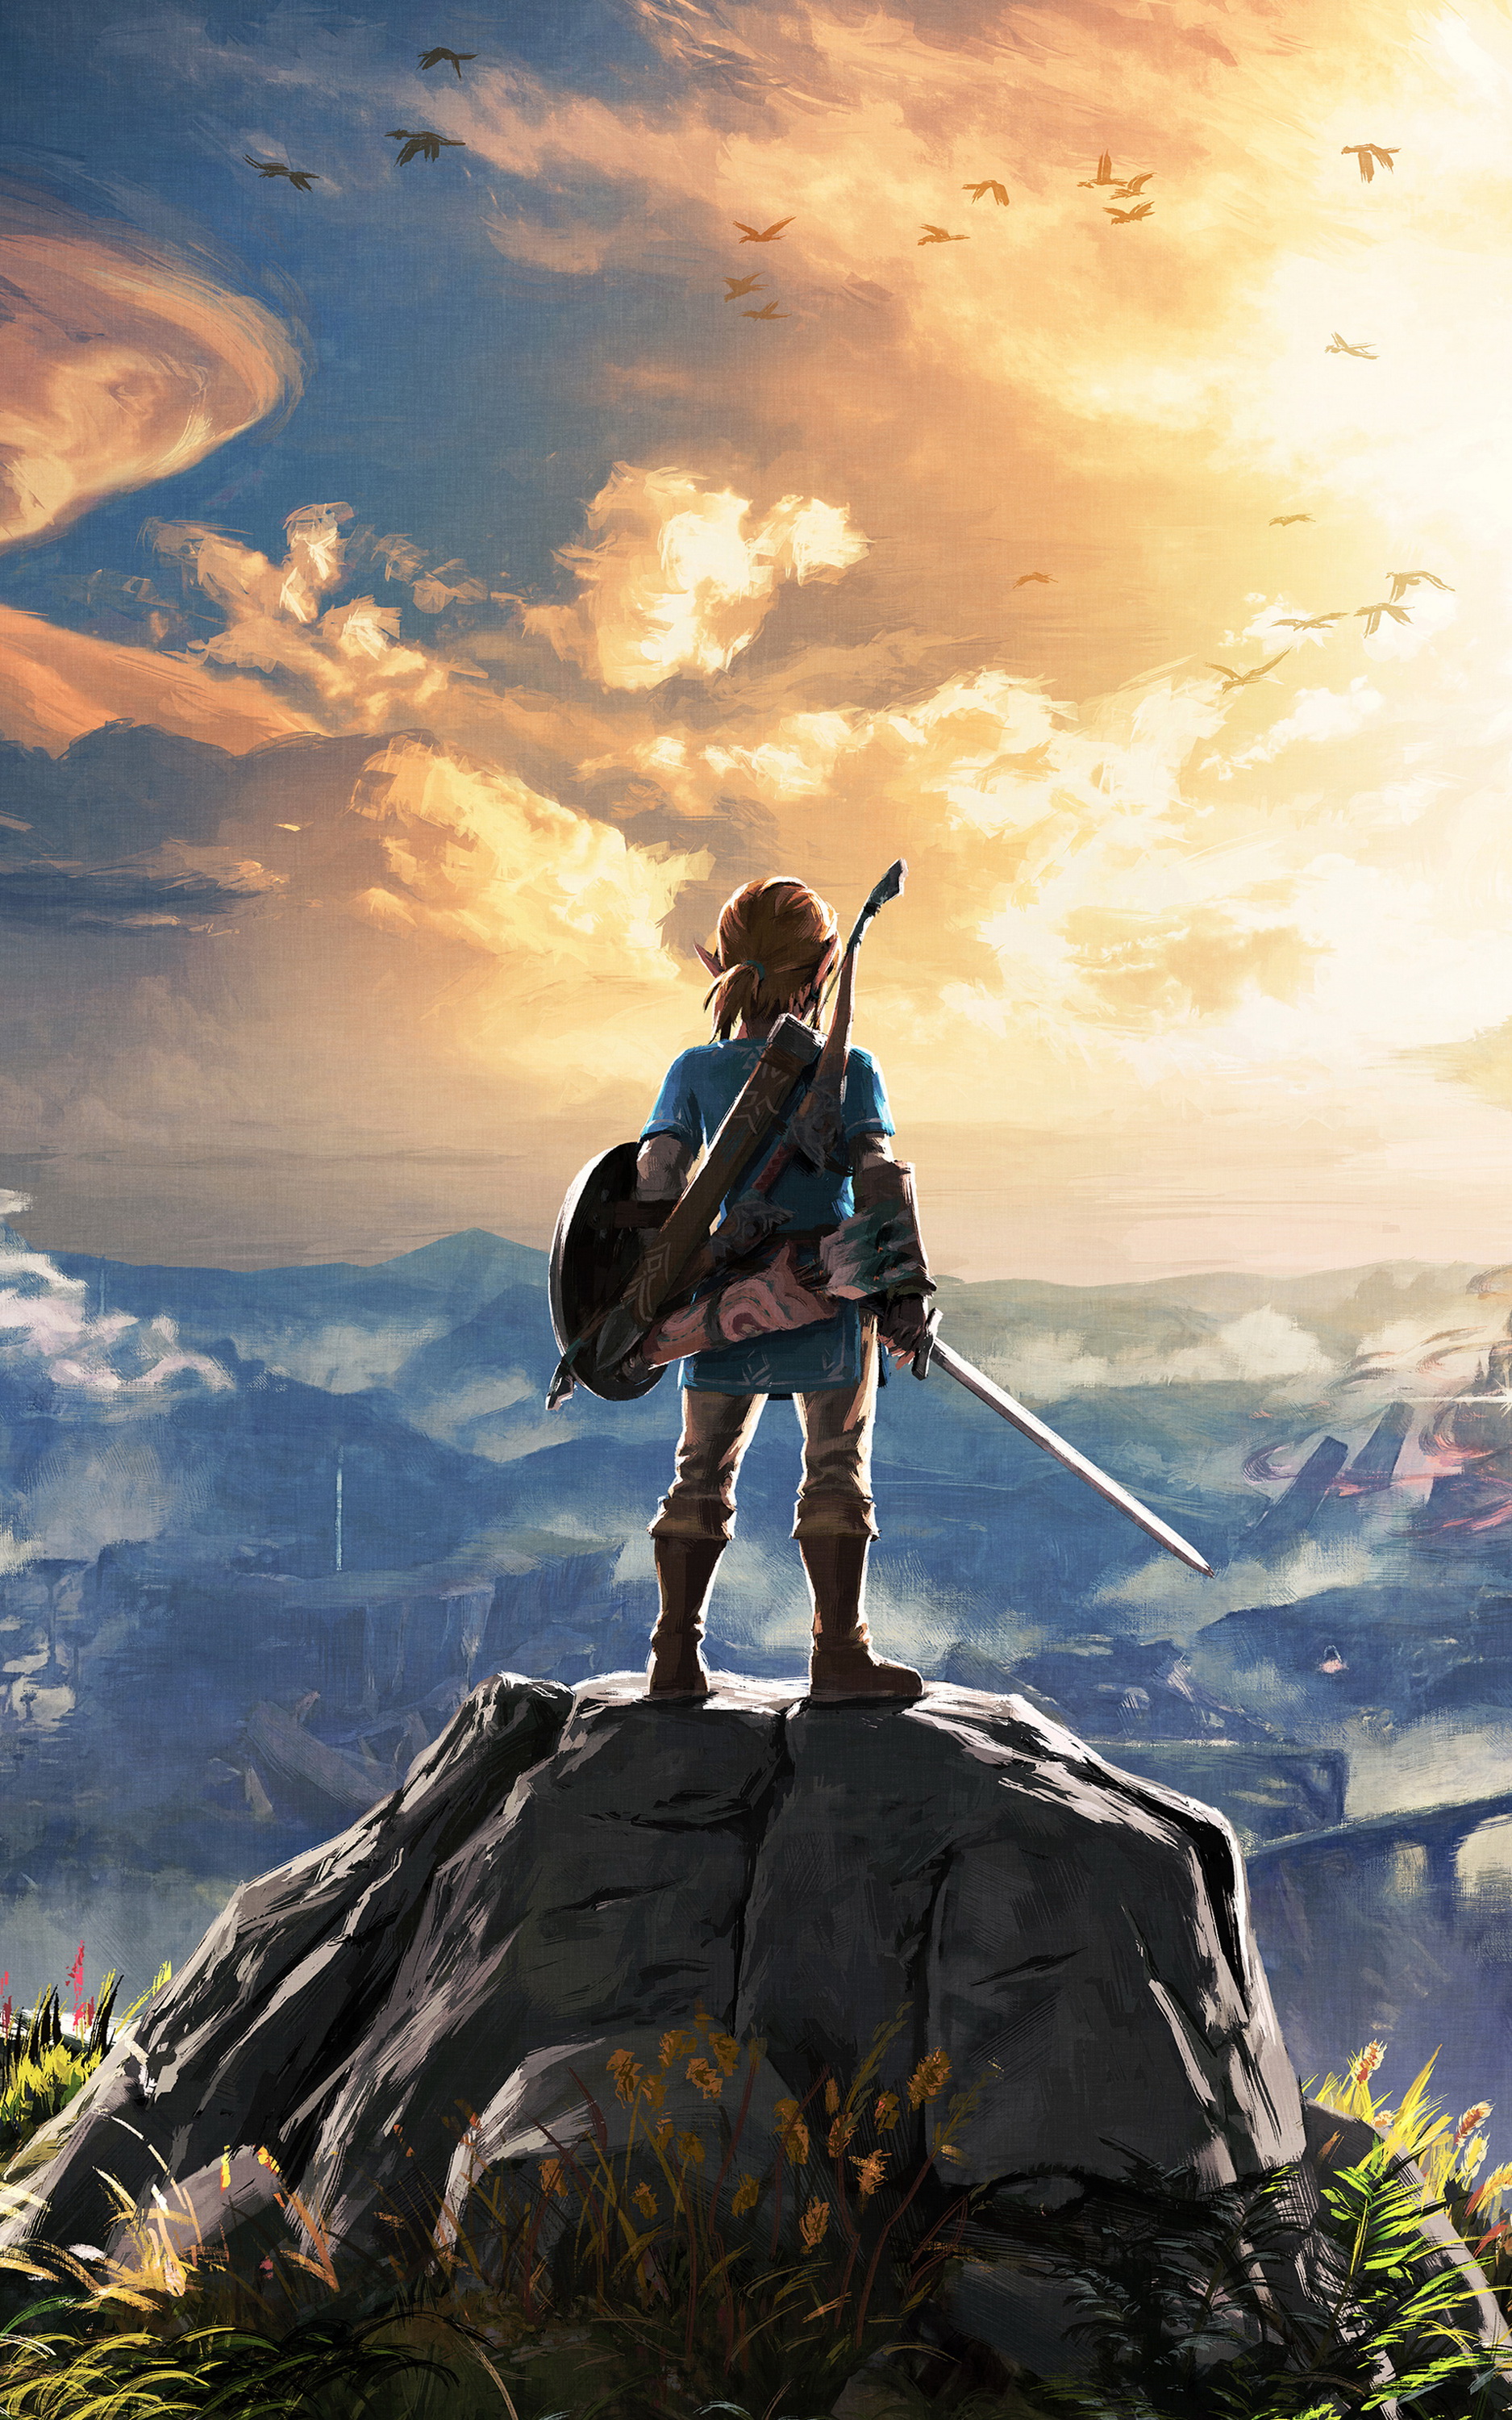 Chiêm ngưỡng những hình ảnh tuyệt đẹp về \'Zelda - trò chơi hot nhất hiện nay\'! Với các phát minh độc đáo và các thử thách kịch tính, Zelda hứa hẹn sẽ mang đến cho bạn những trải nghiệm tuyệt vời. Hãy xem hình ảnh để tìm hiểu thêm về thế giới Zelda!